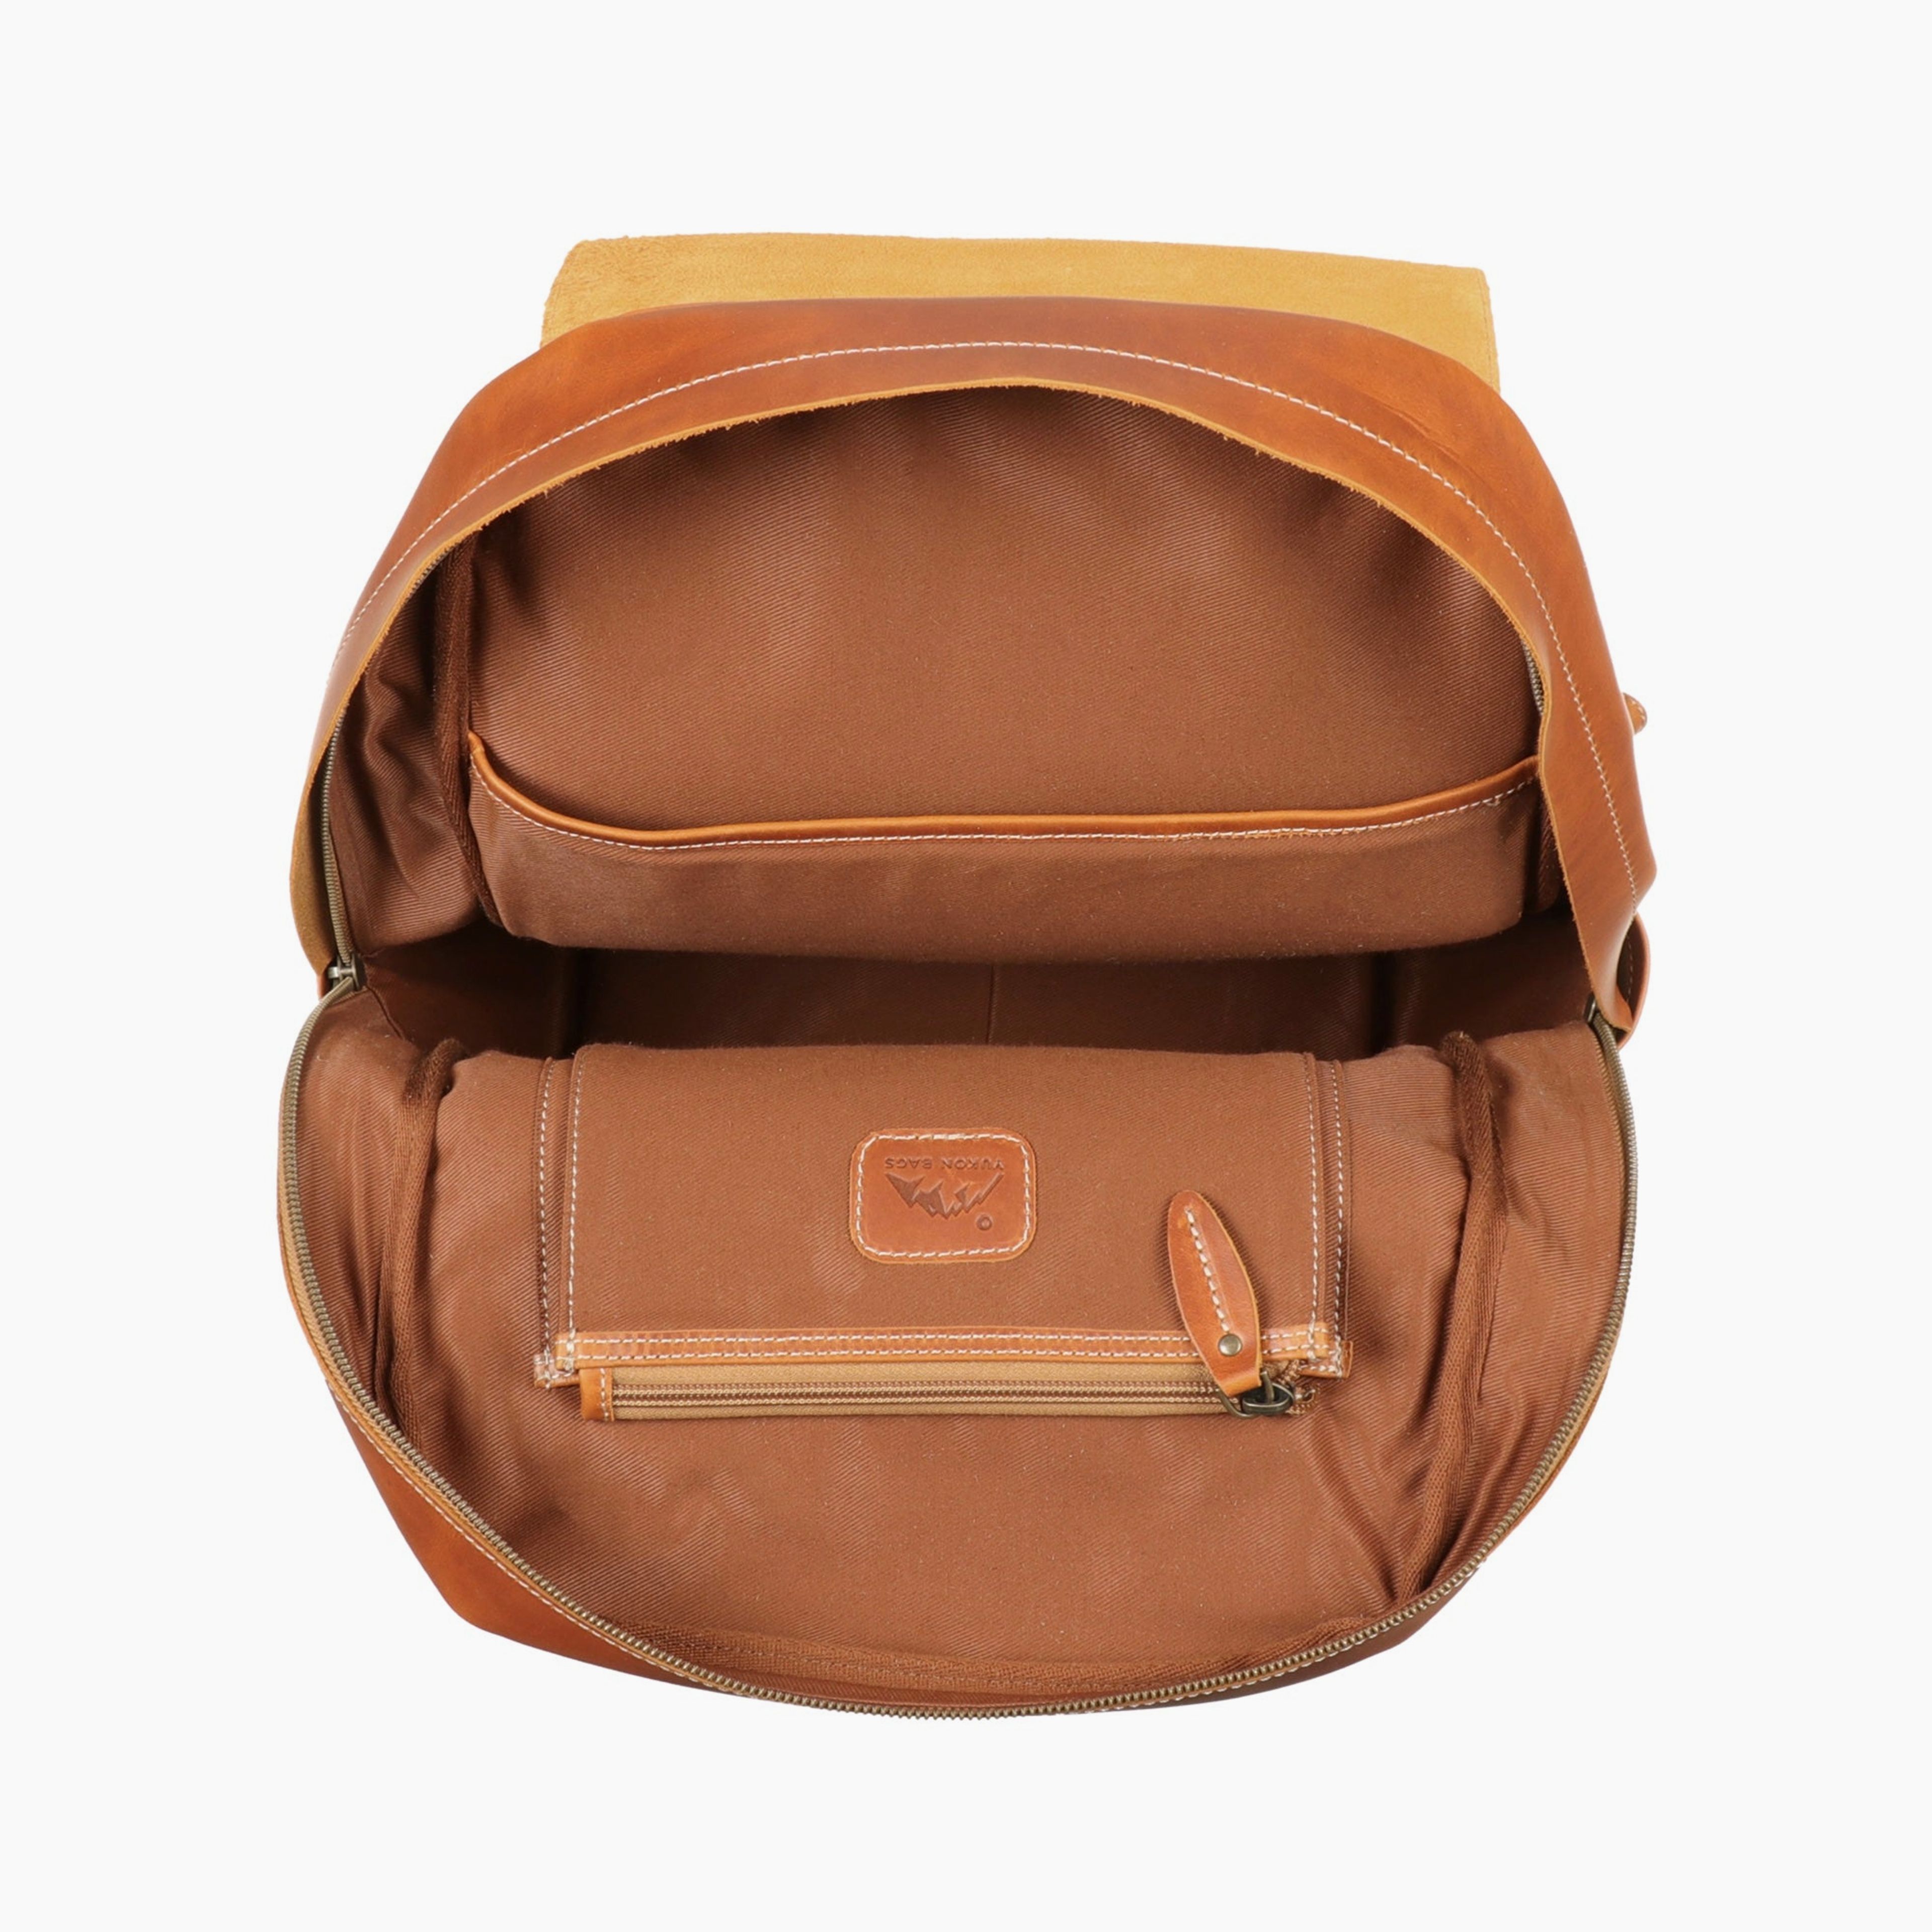 Napa Leather Backpack - Large